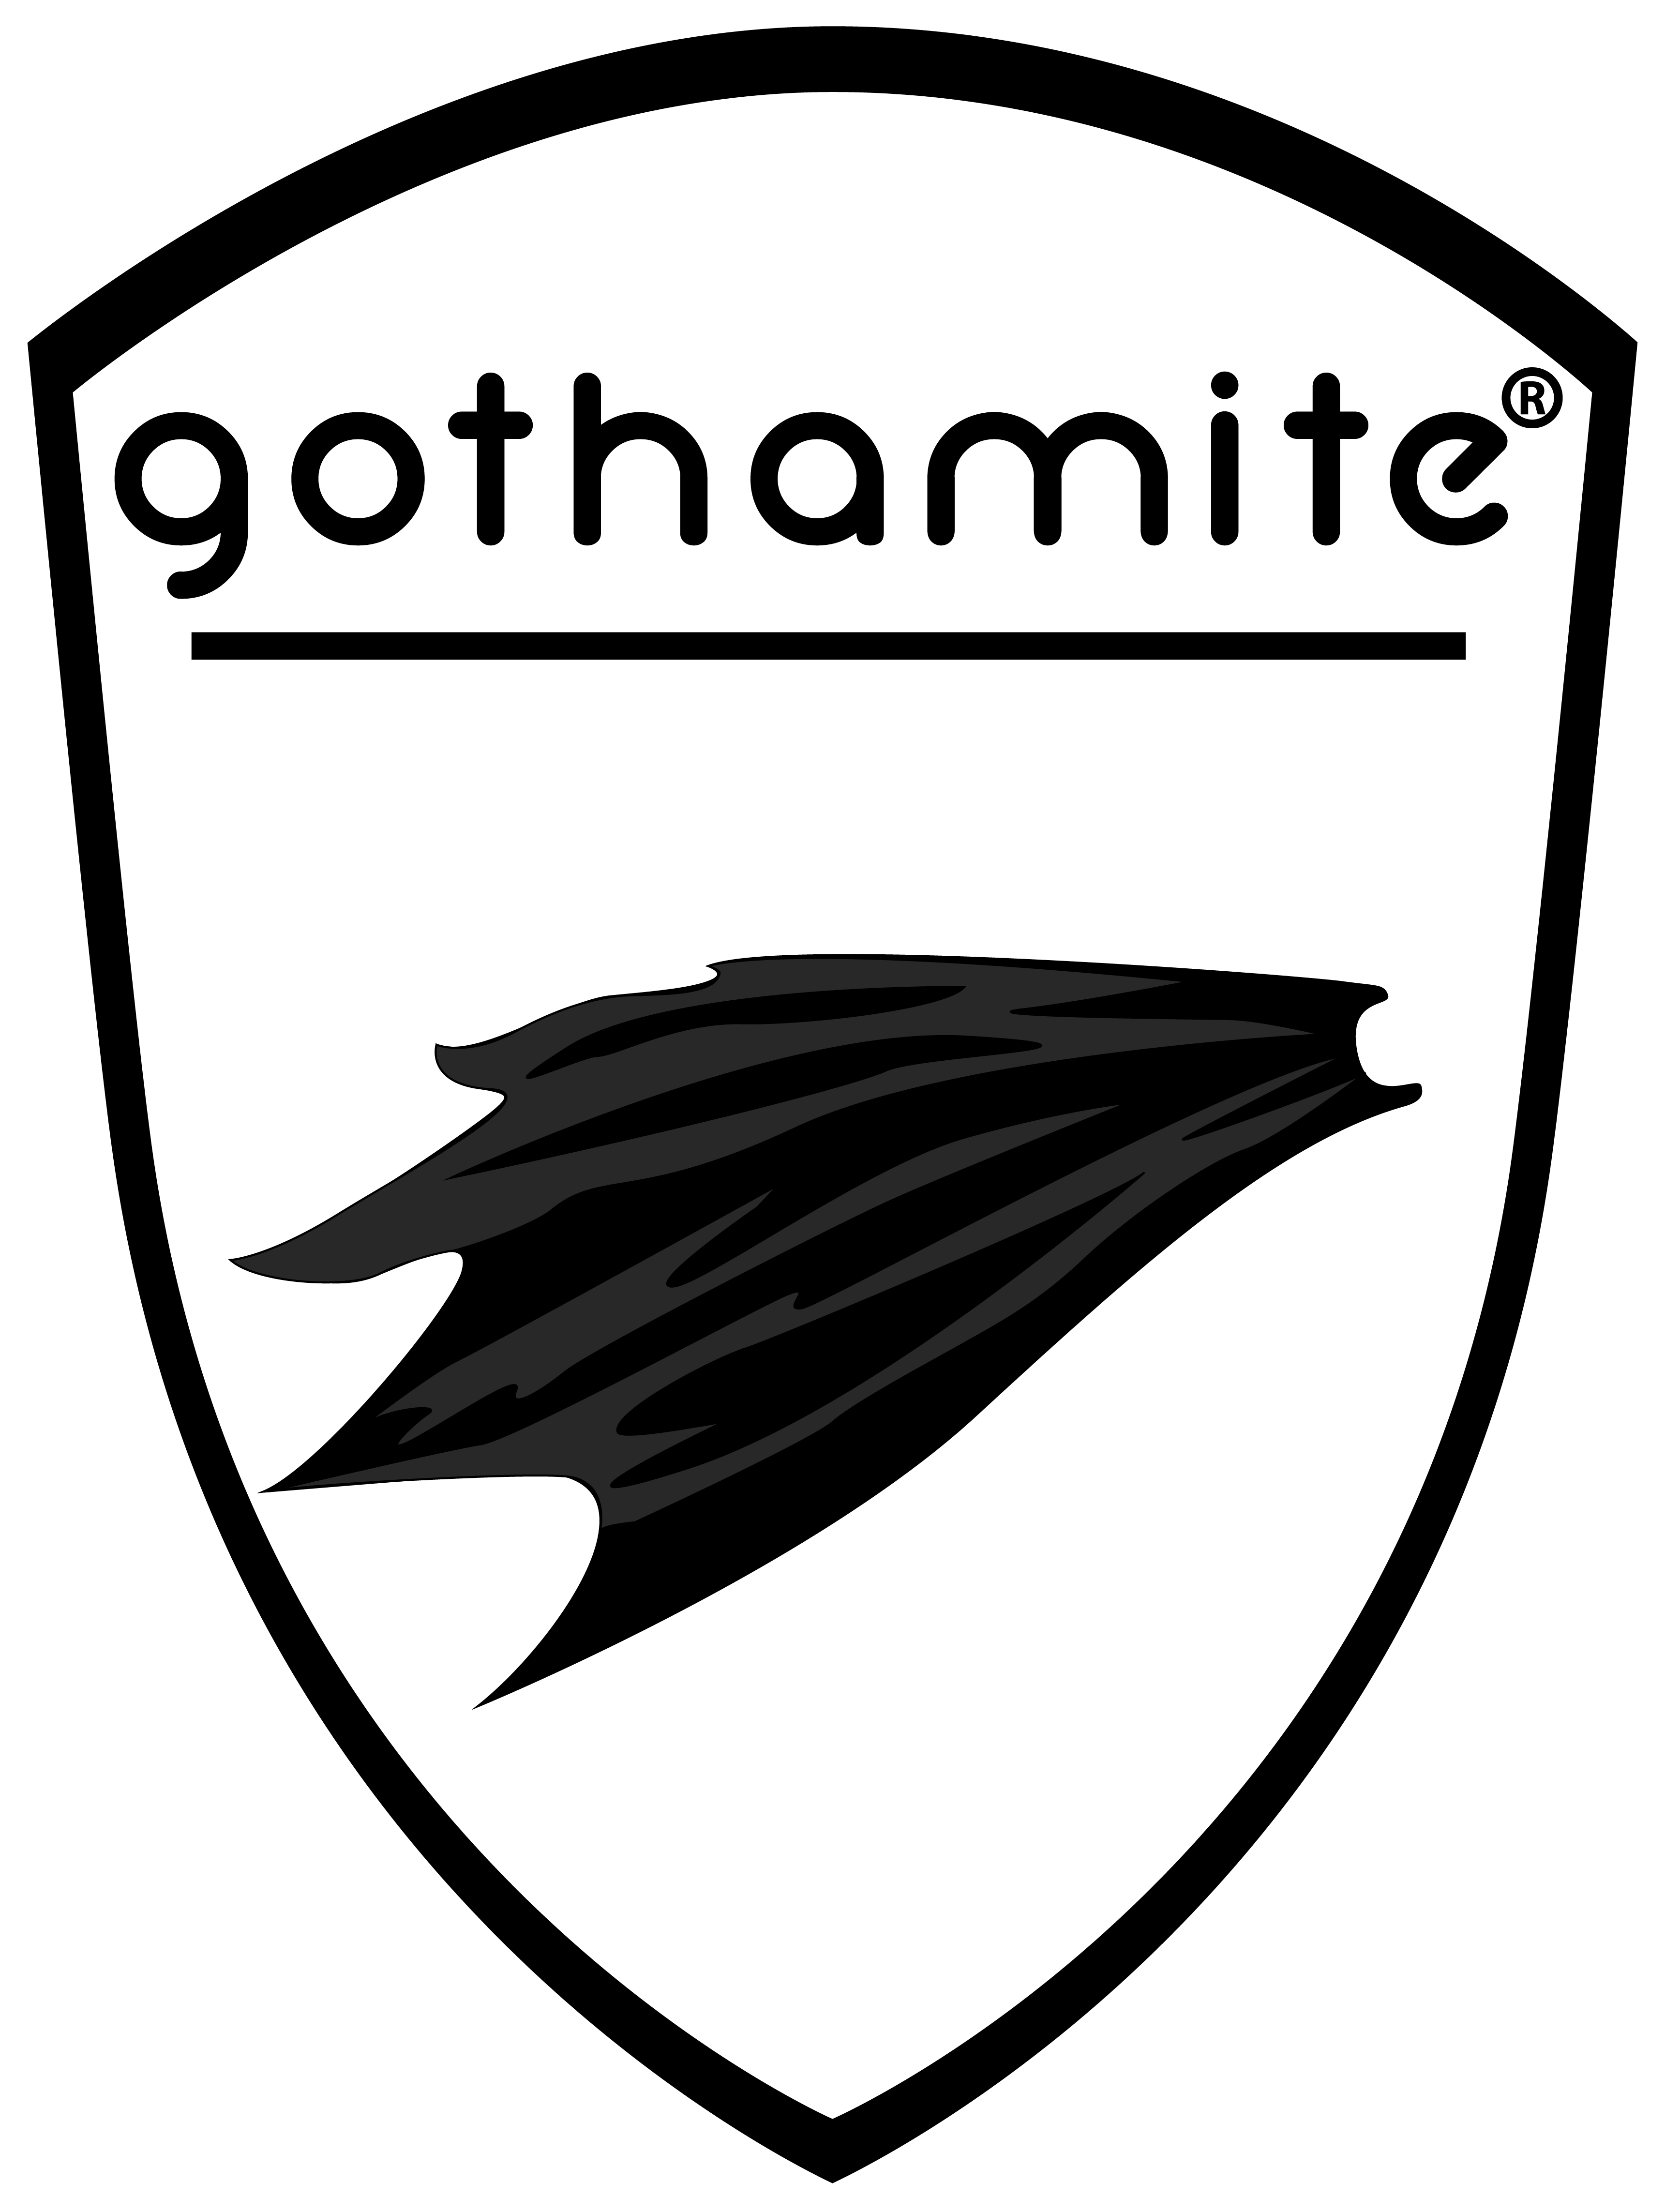 GOTHAMITE